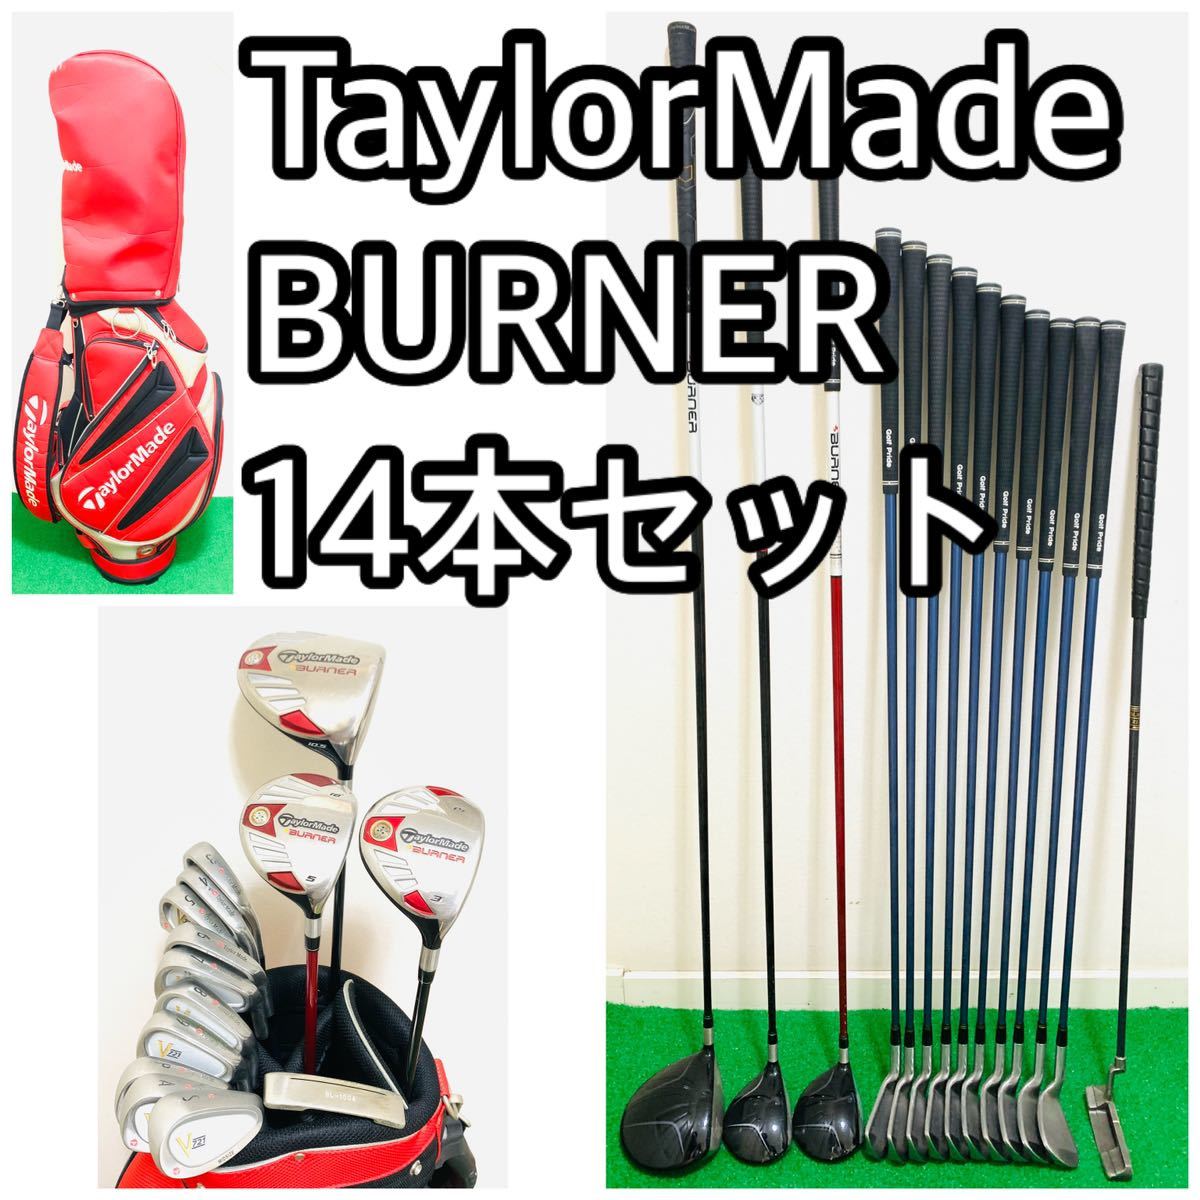 5140 TaylorMade BURNER メンズ ゴルフクラブフルセット - 通販